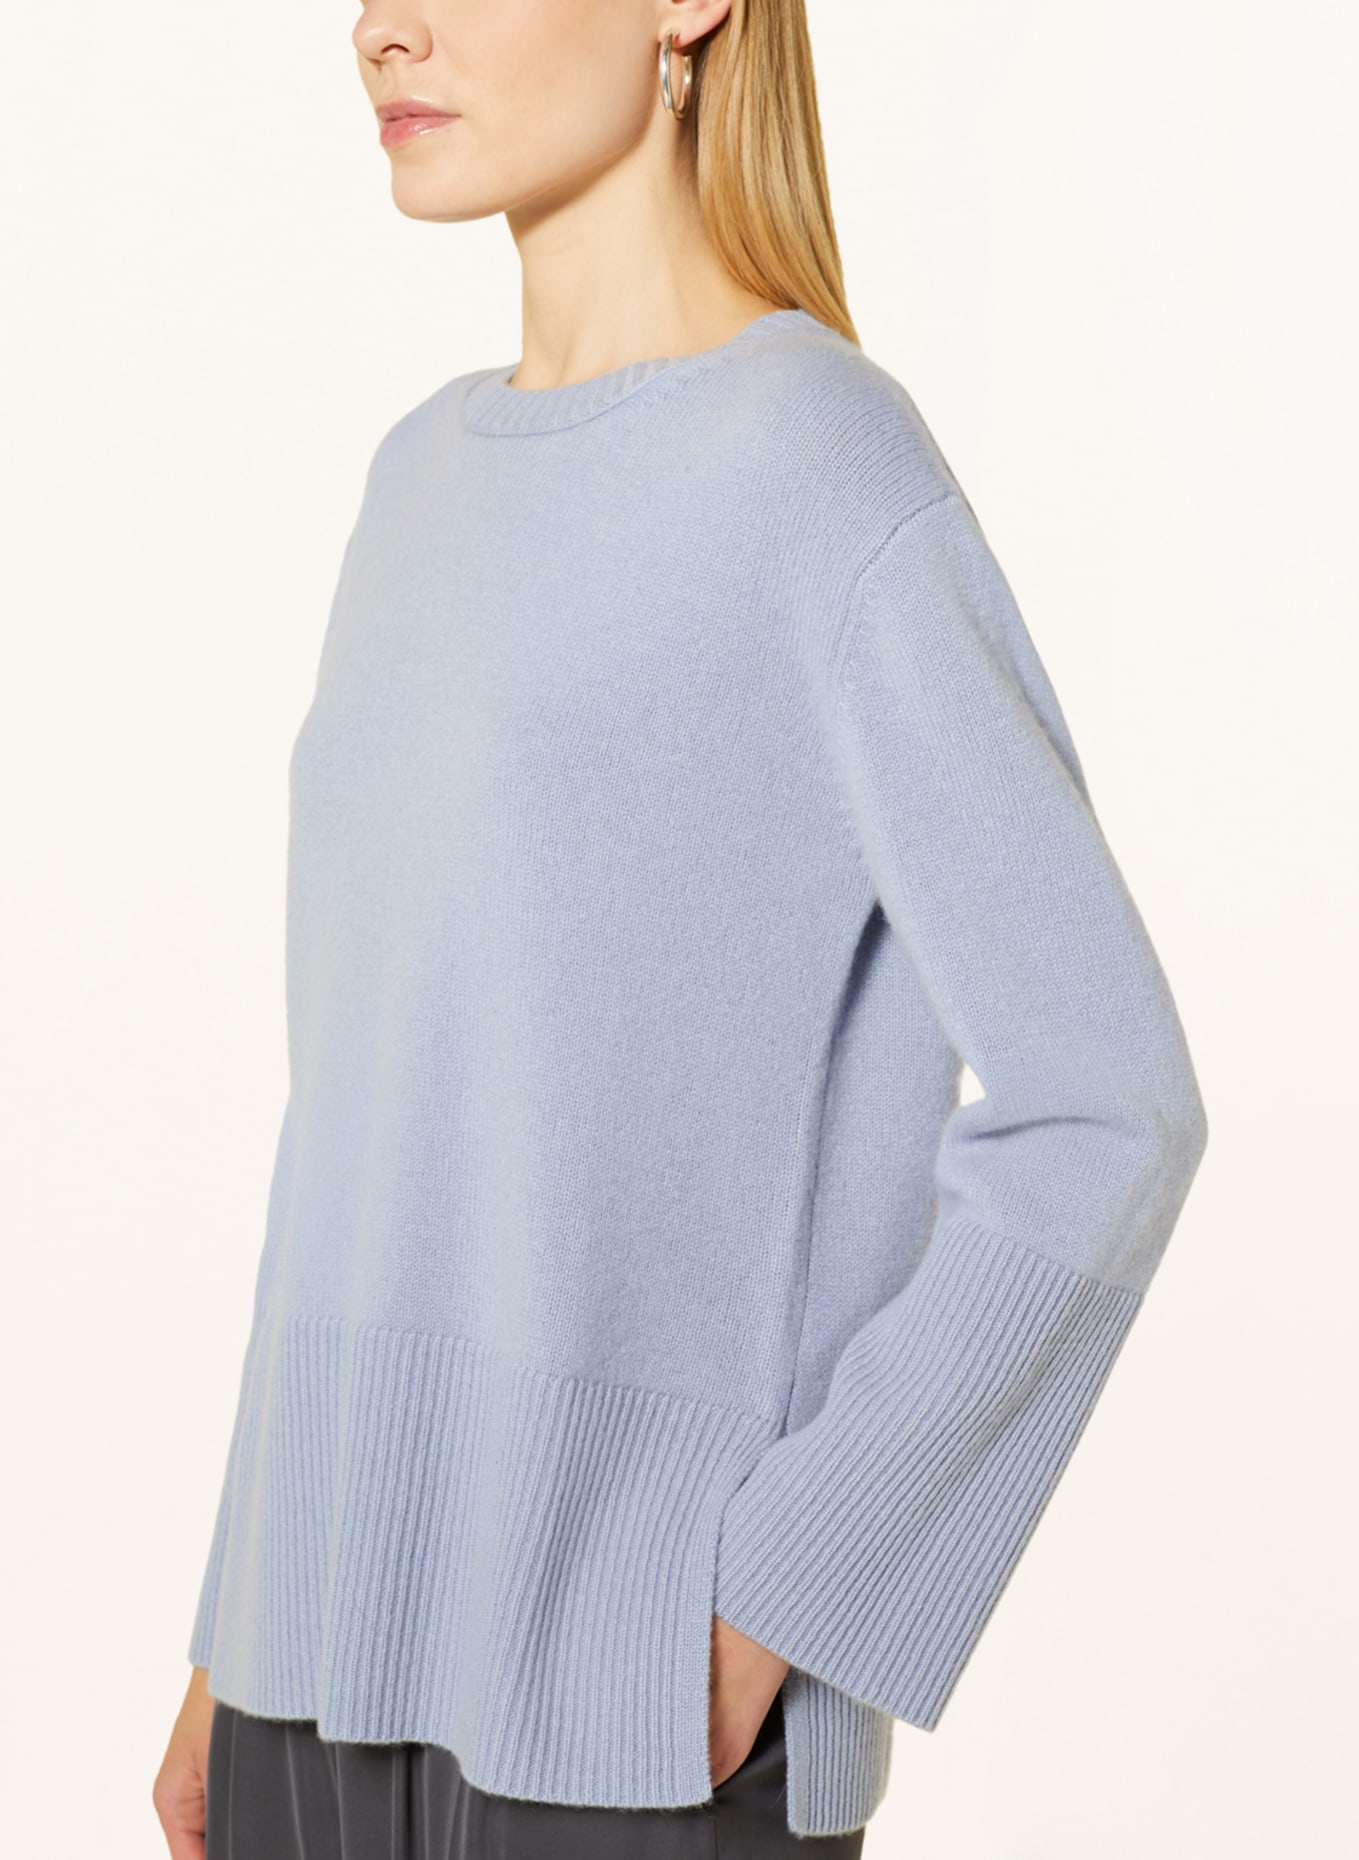 HEMISPHERE Cashmere-Pullover, Farbe: 5174 hellblau (Bild 4)